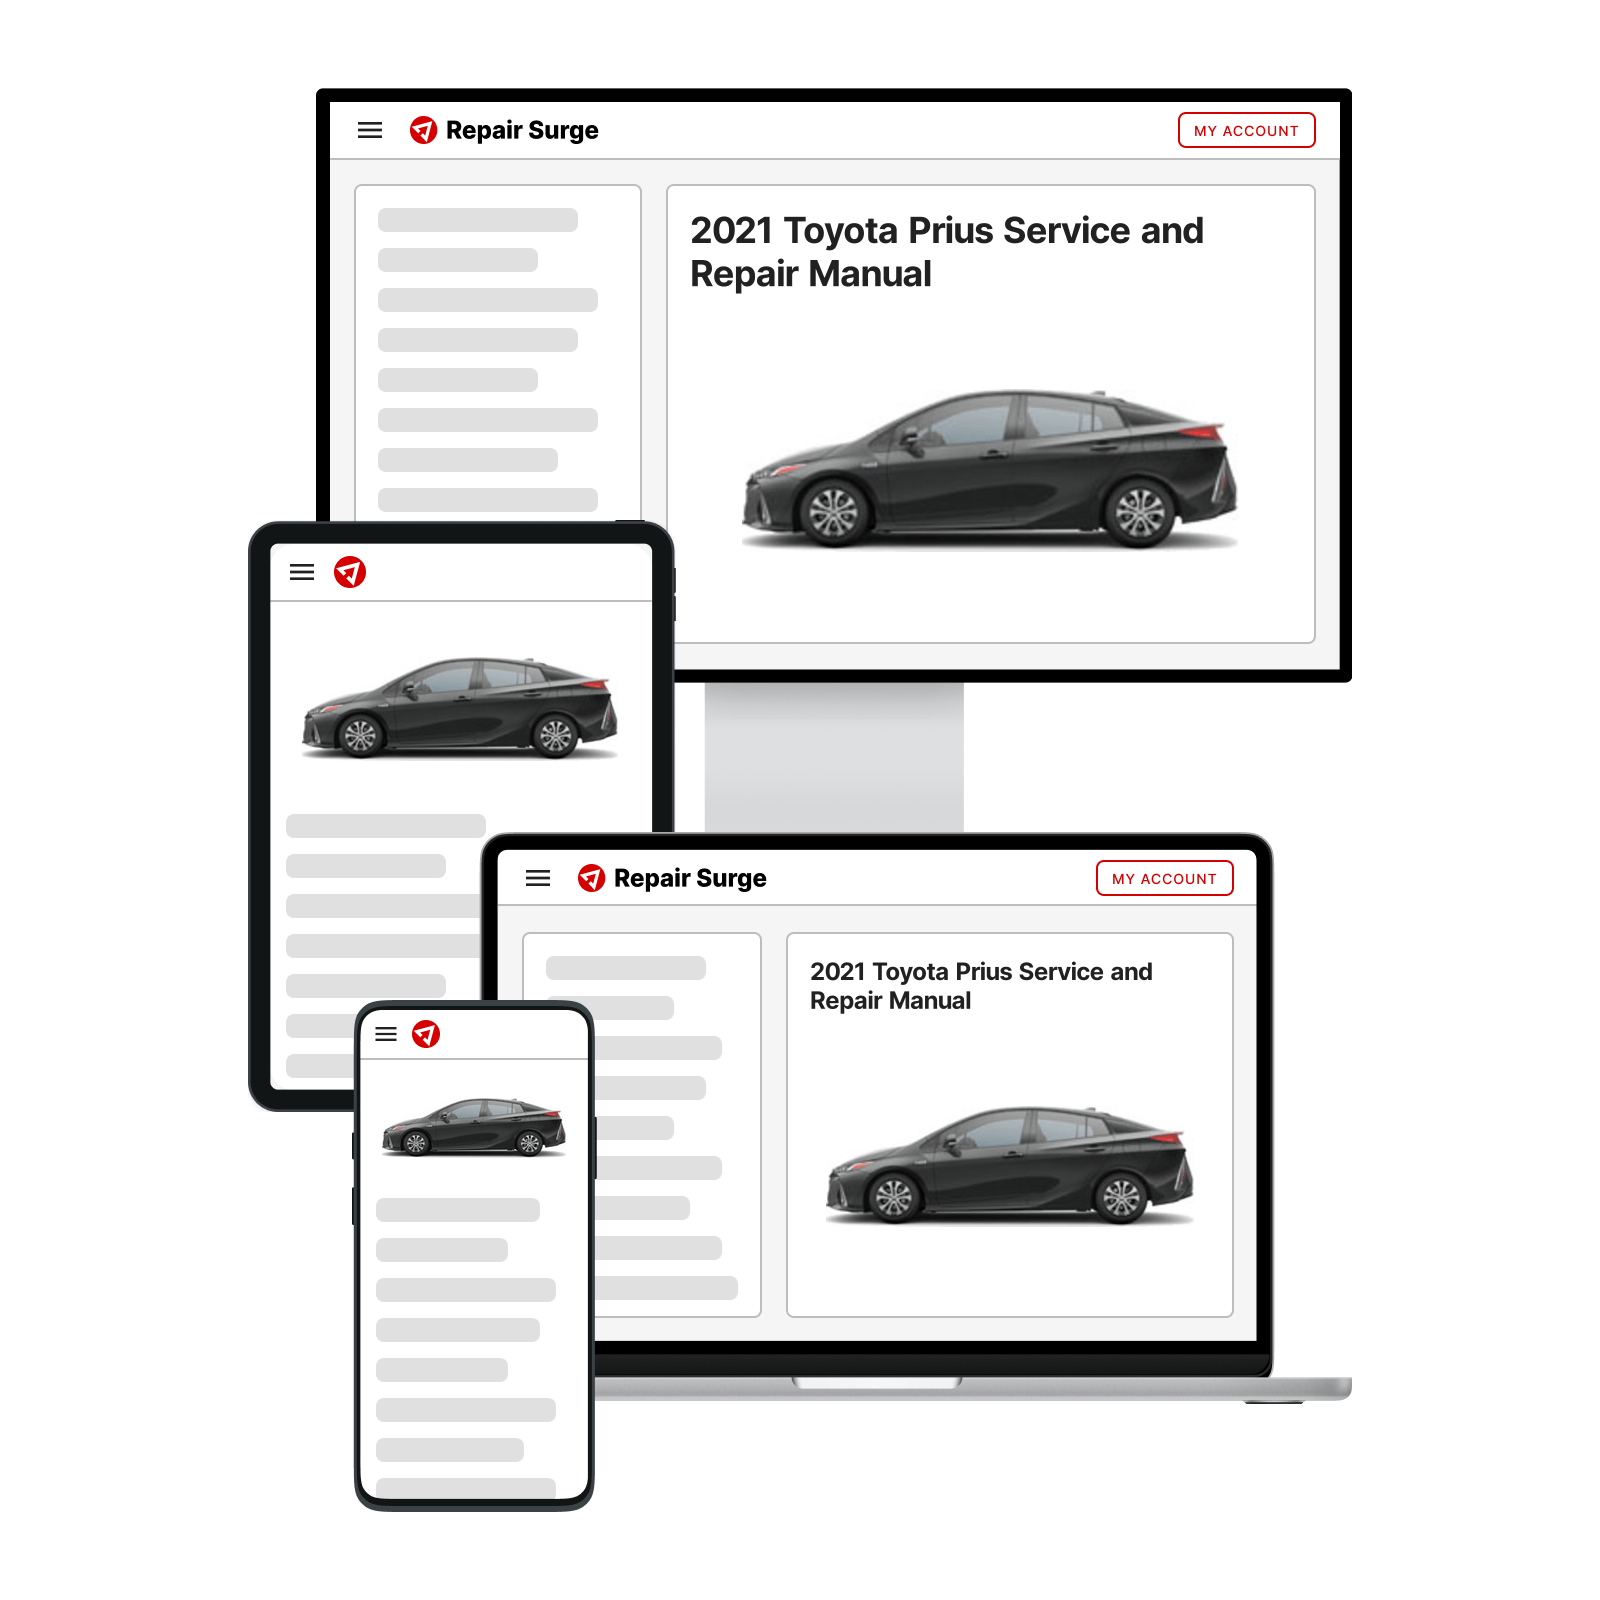 2021 Toyota Prius service and repair manual hero image